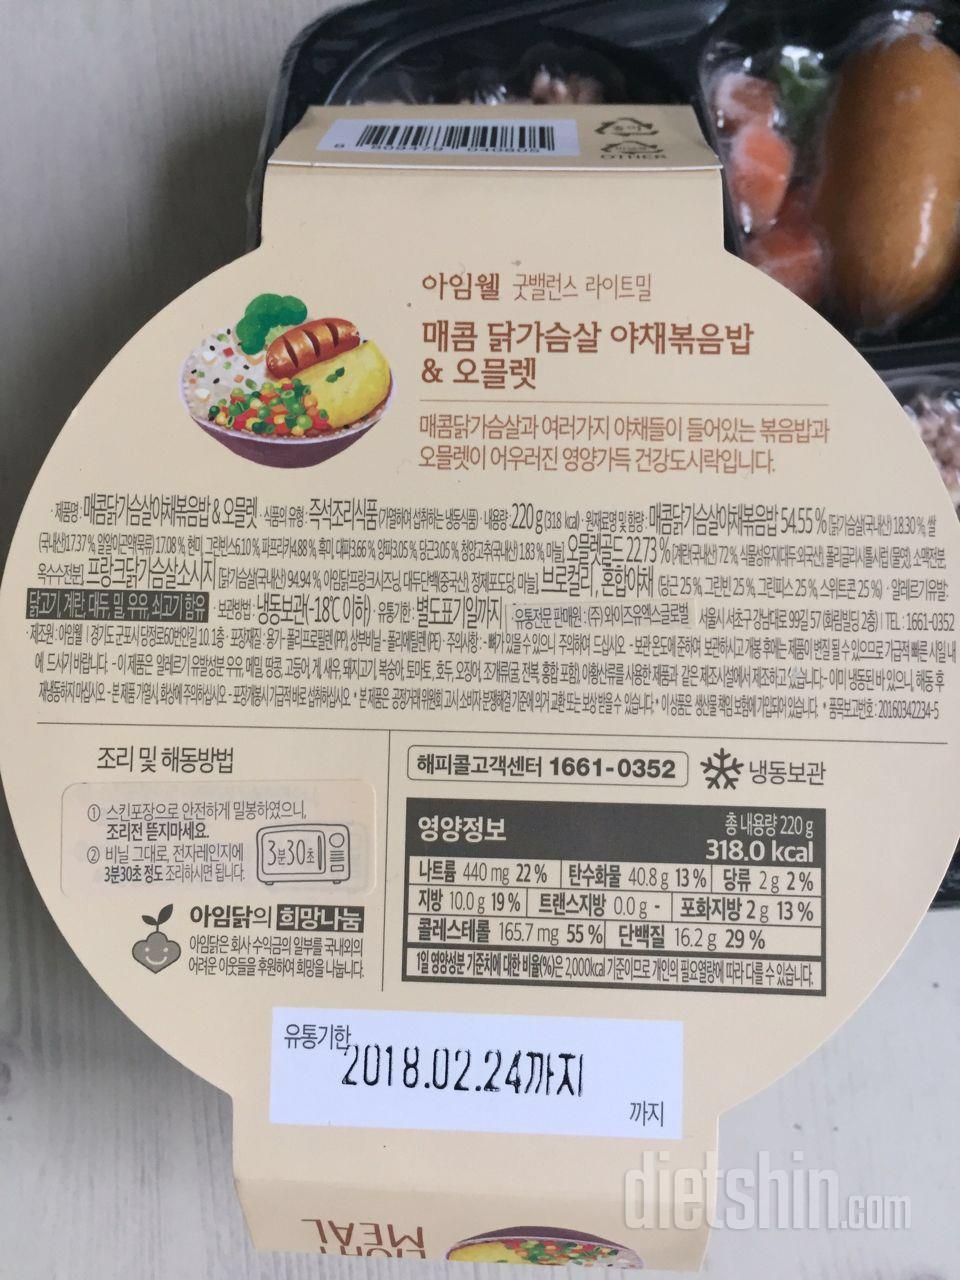 🍱💁세번째 후기! (feat.더블업 치즈) 아임웰을 가장 맛있게 먹는법! 매콤닭가슴살 야채볶음밥과 오믈렛!